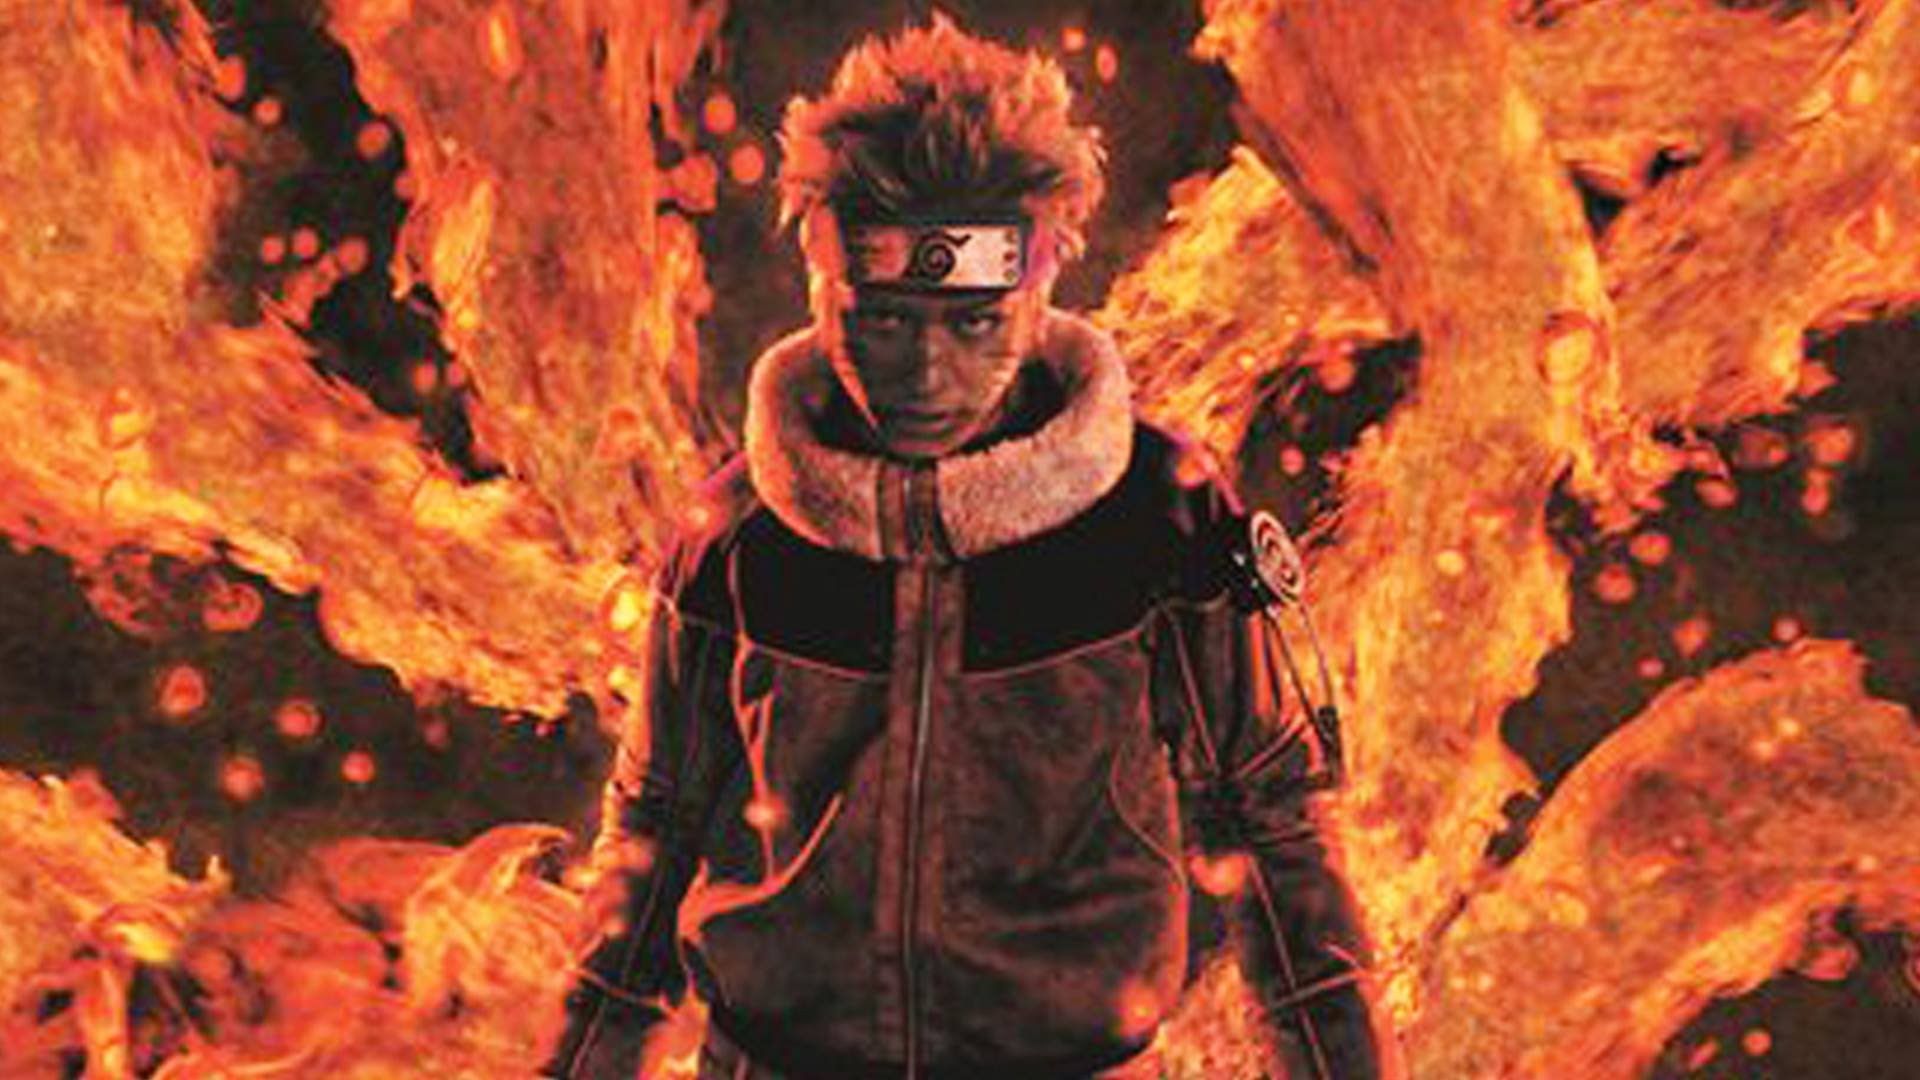 Naruto Vs Goku Live Wallpaper Download Naruto Vs Goku Live. Naruto, Live action, Musicals